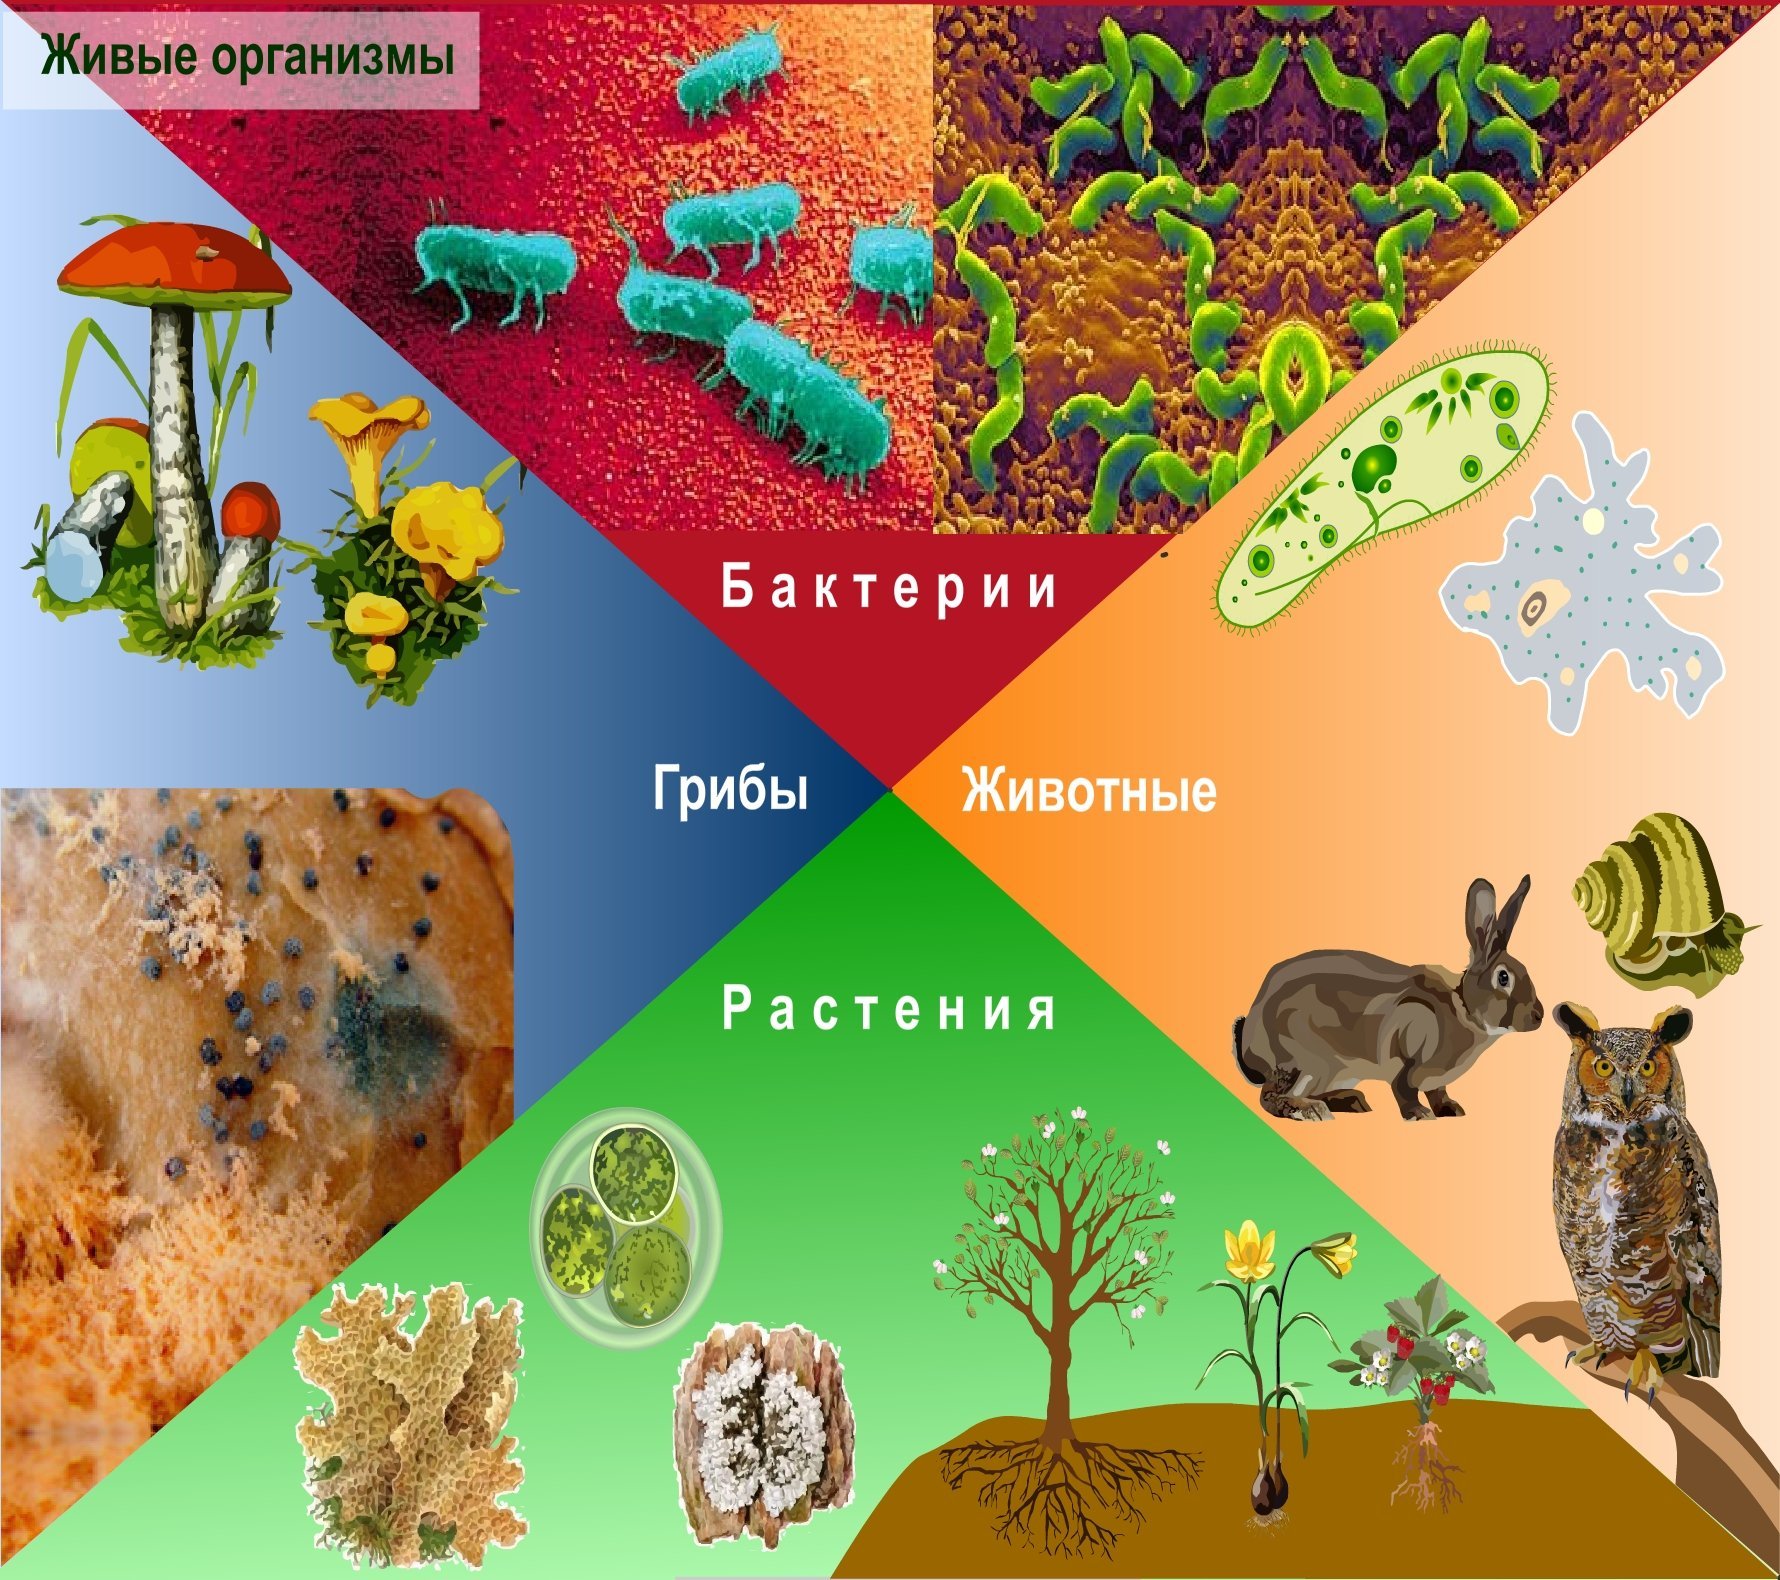 Биологическое разнообразие живых организмов